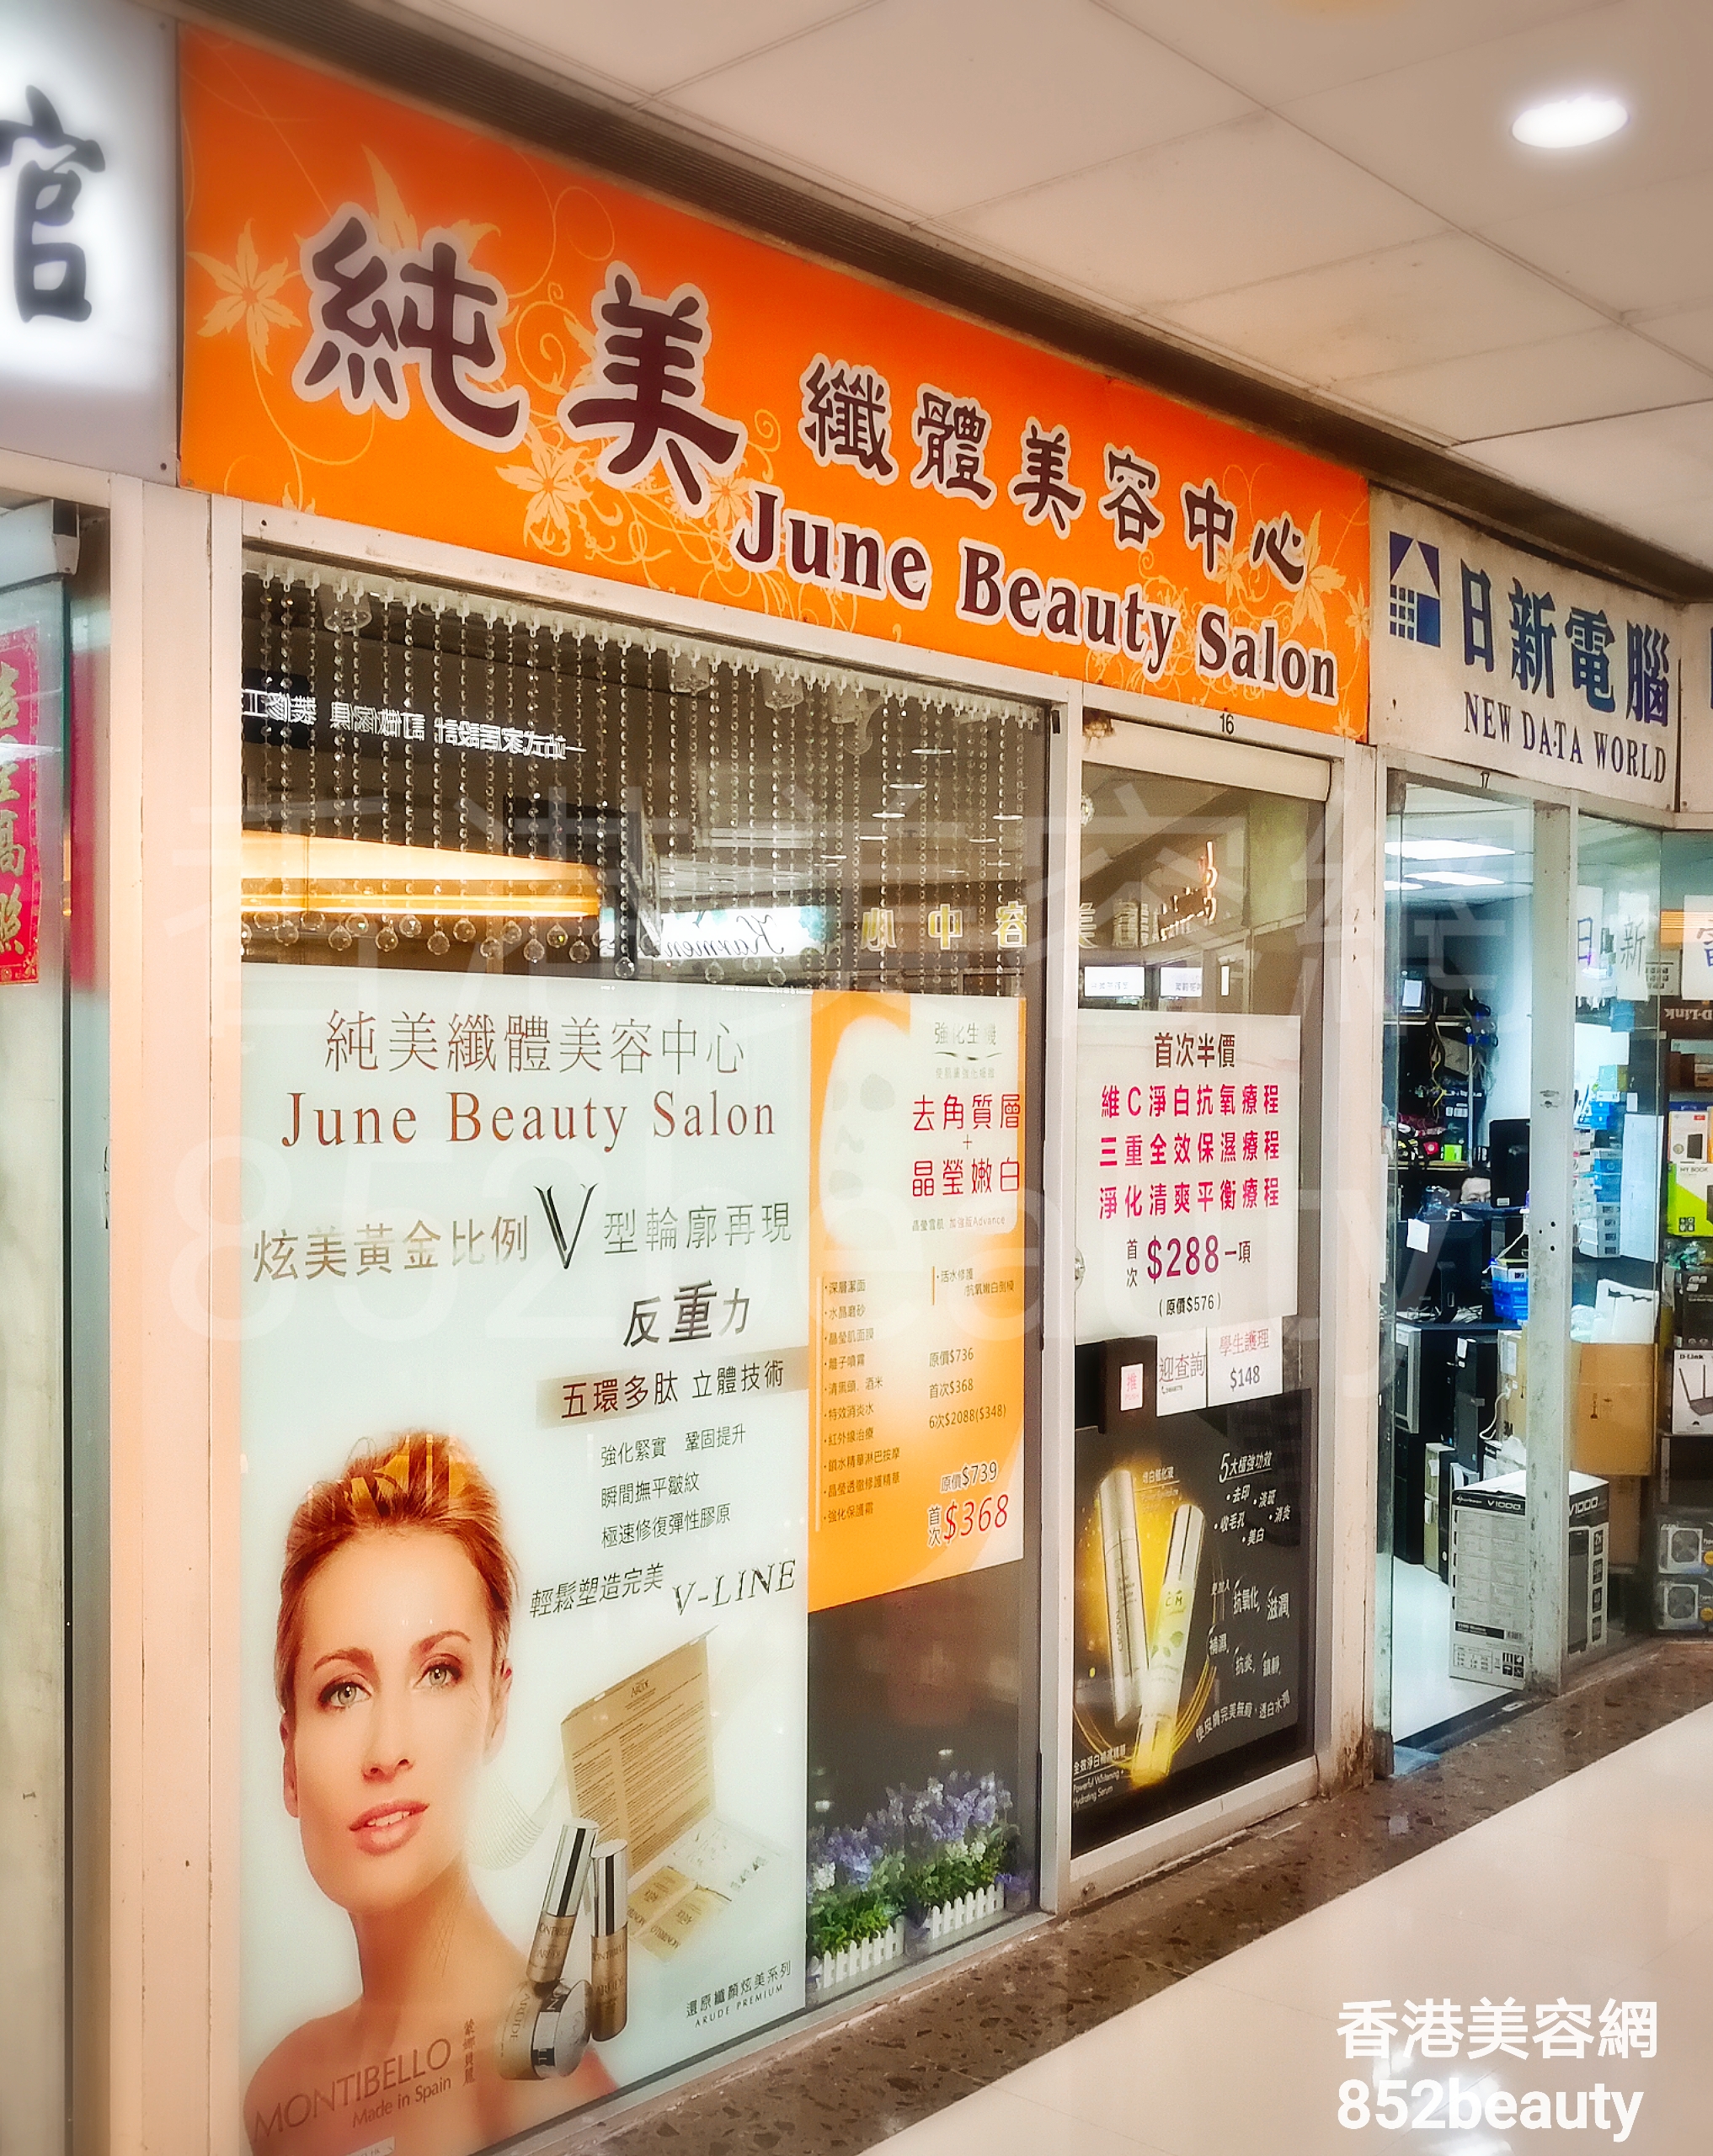 香港美容網 Hong Kong Beauty Salon 美容院 / 美容師: 純美 纖體美容中心